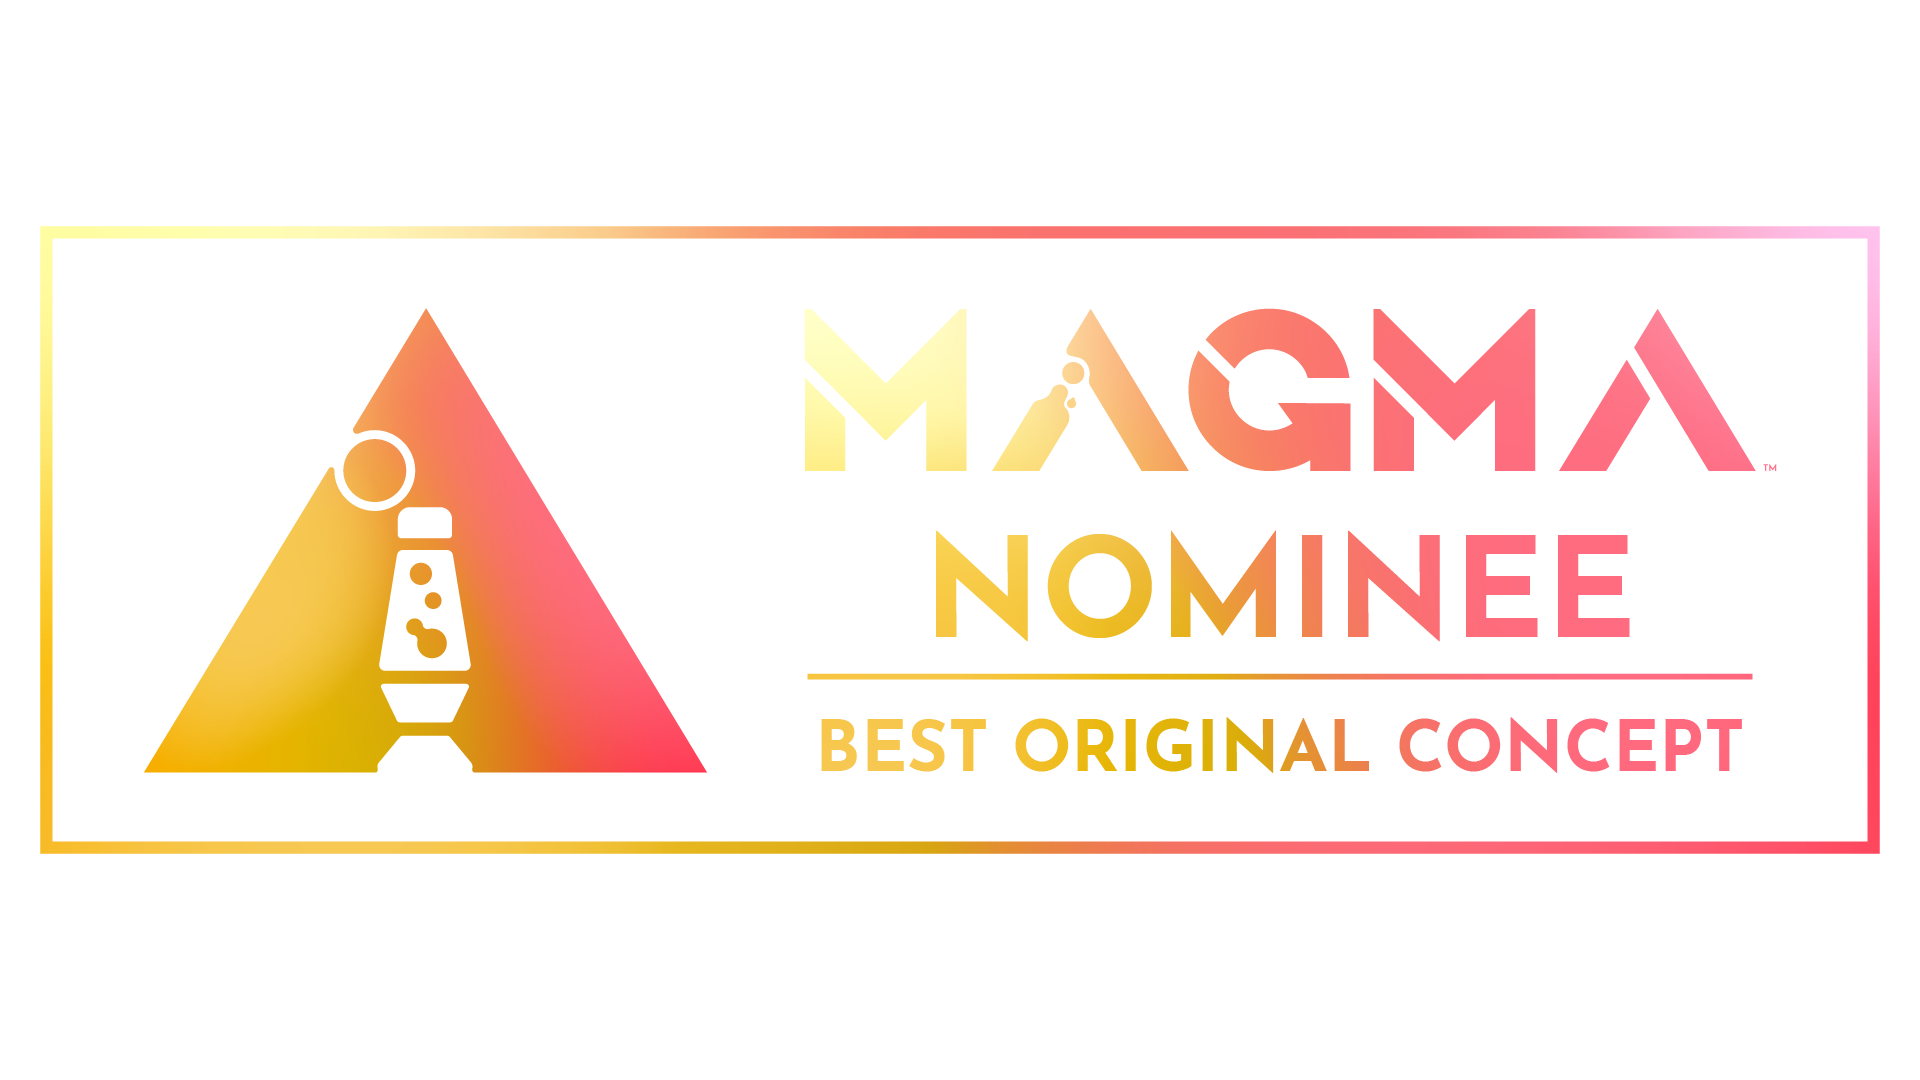 Magma Nominee Best original concept